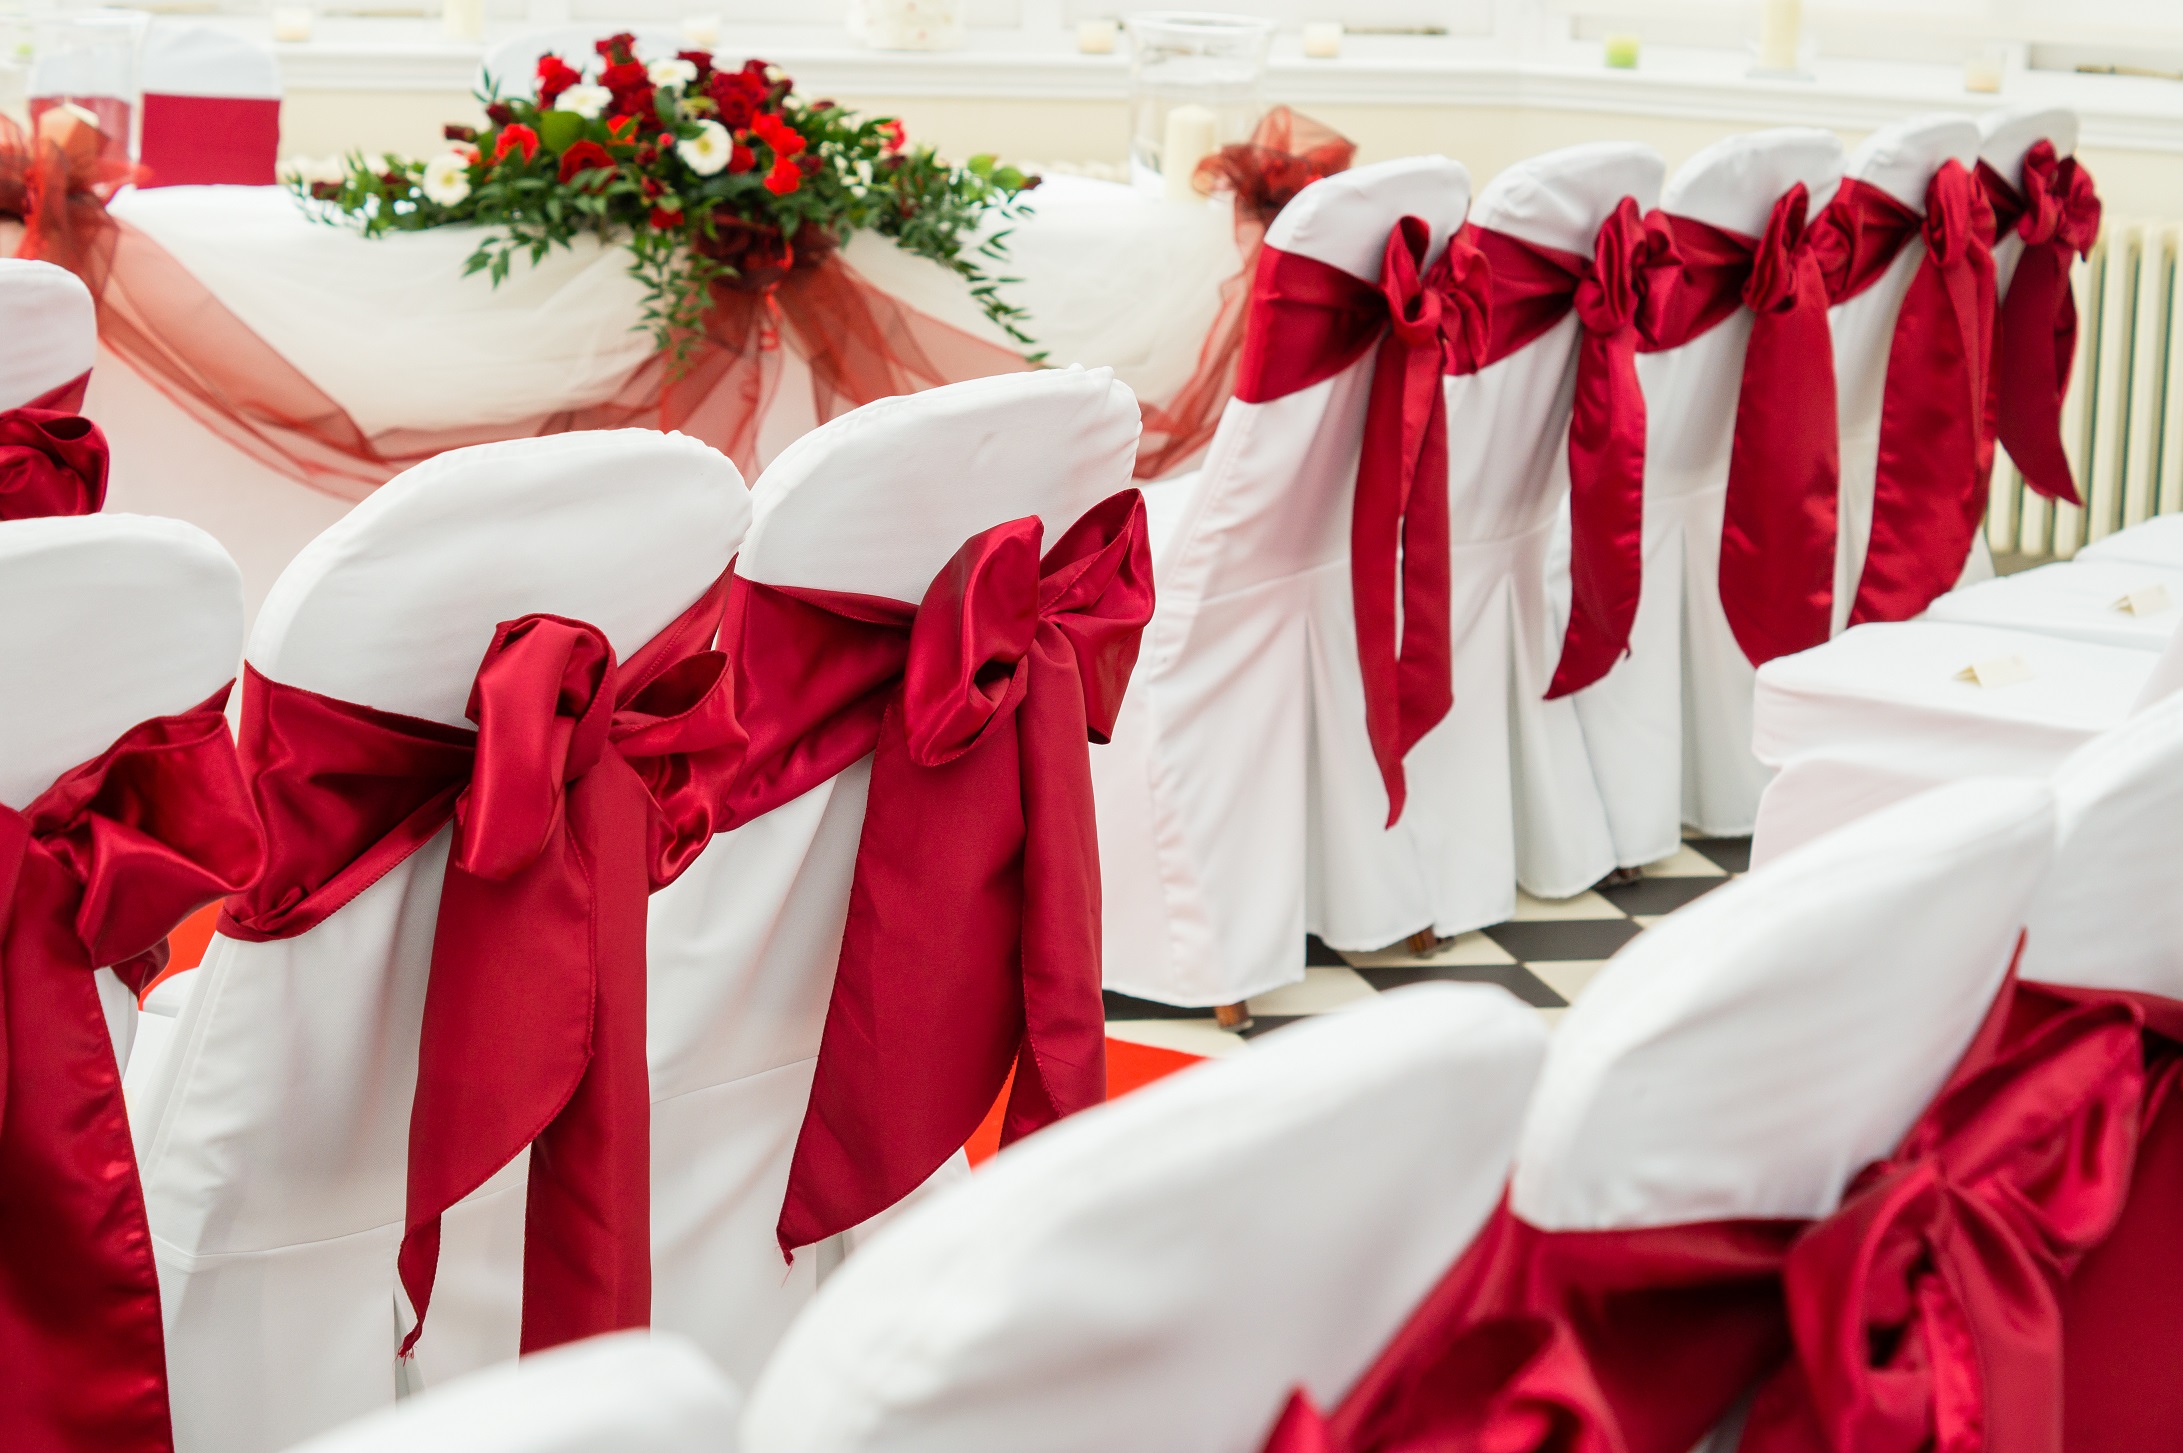 Hanbury Manor Wedding, Hertfordshire, red chair tie ceremony details